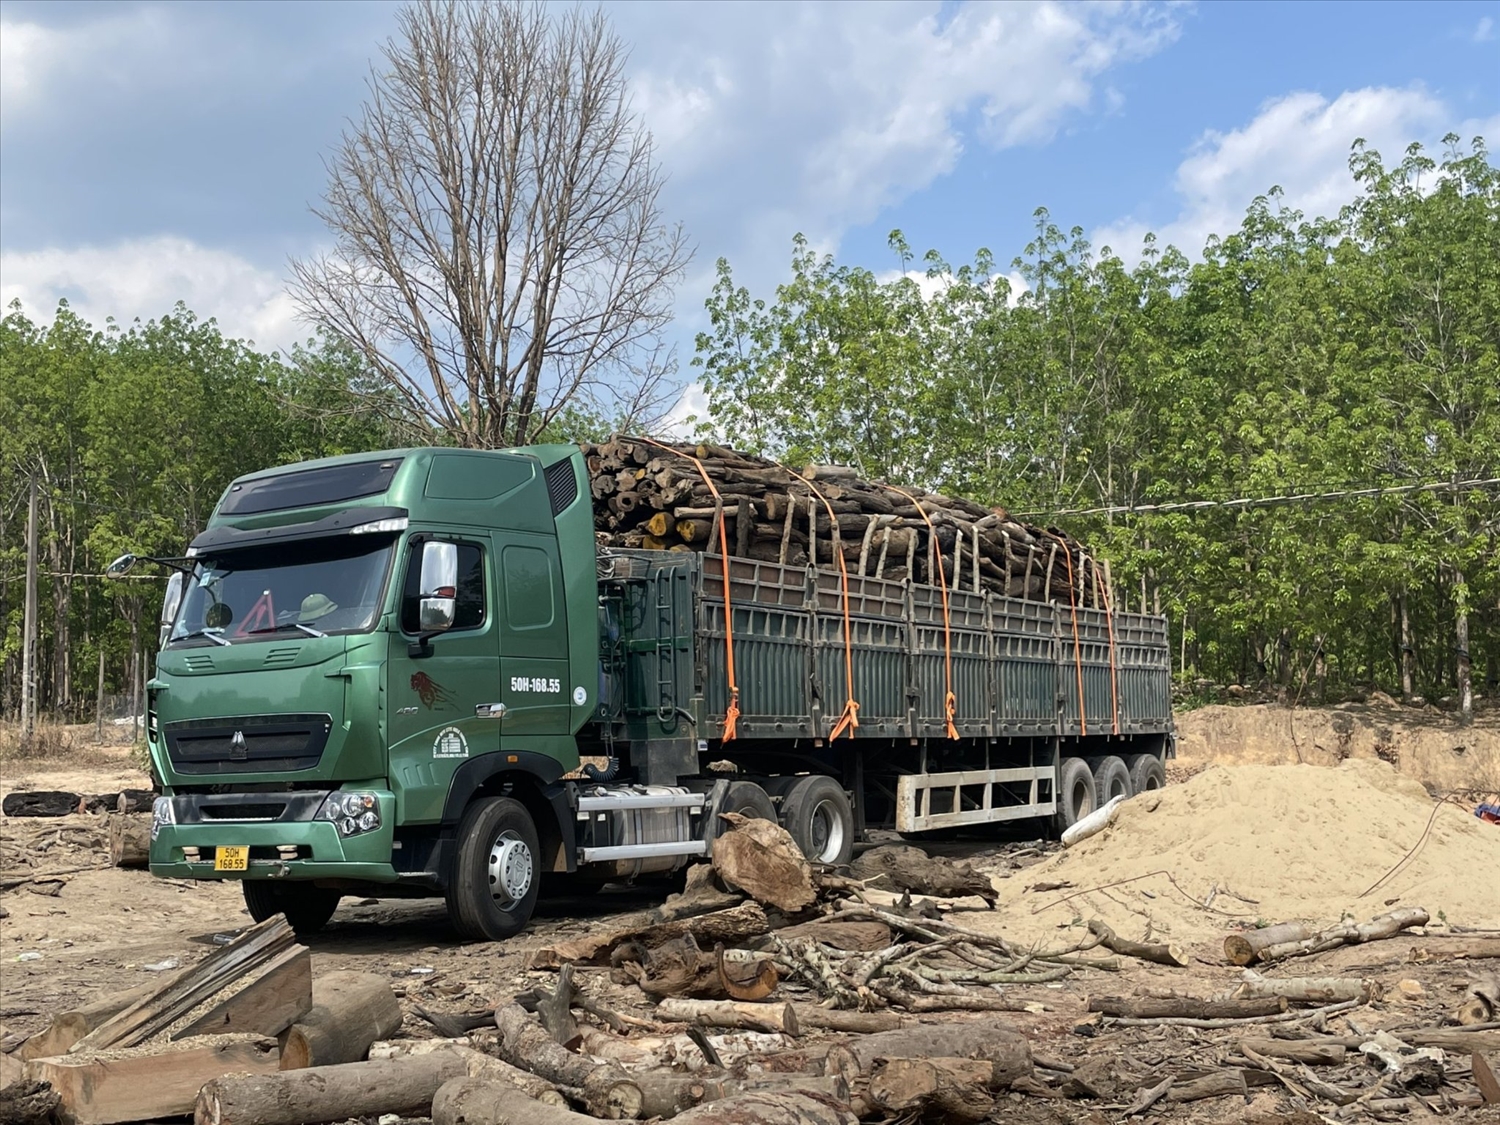 Xe chở gỗ bị phát hiện khi chuẩn bị rời khỏi hiện trường với lượng hàng hóa khoảng 50 tấn tại xã Ia Kriêng, huyện Đức Cơ 